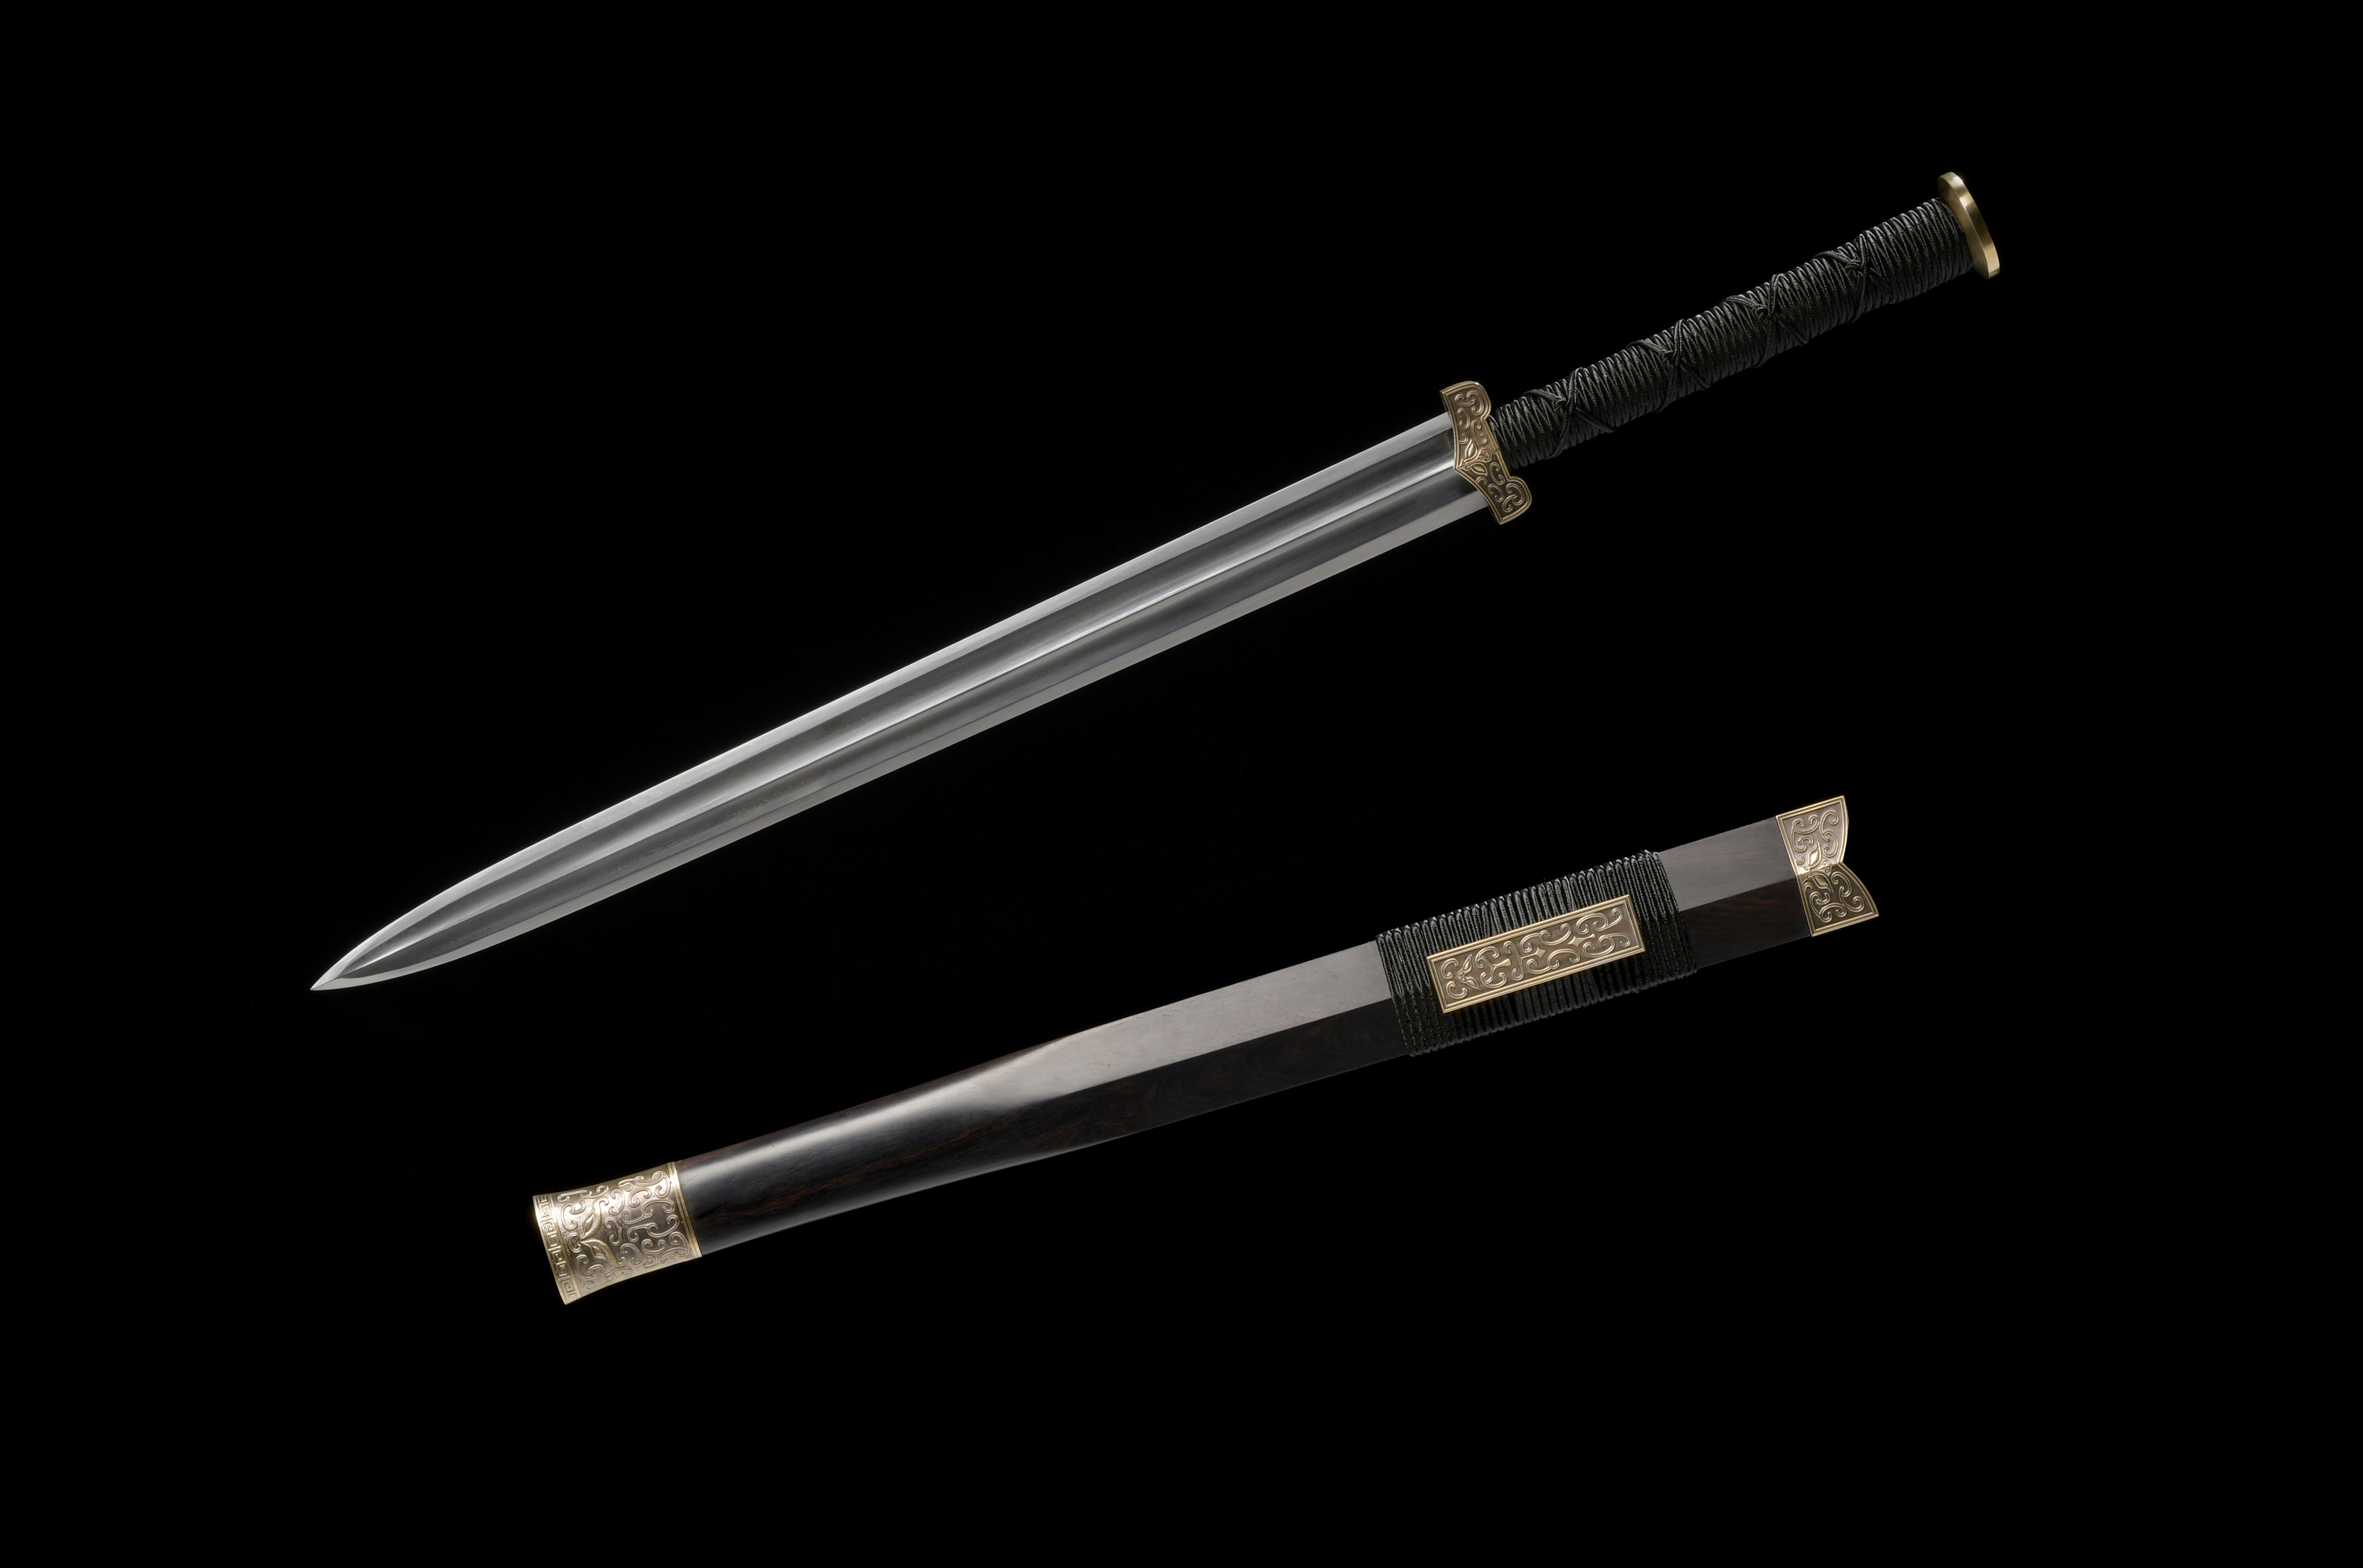 专家们经过对出土的青铜剑进行初步考证,认为该剑属于2213年前的西汉